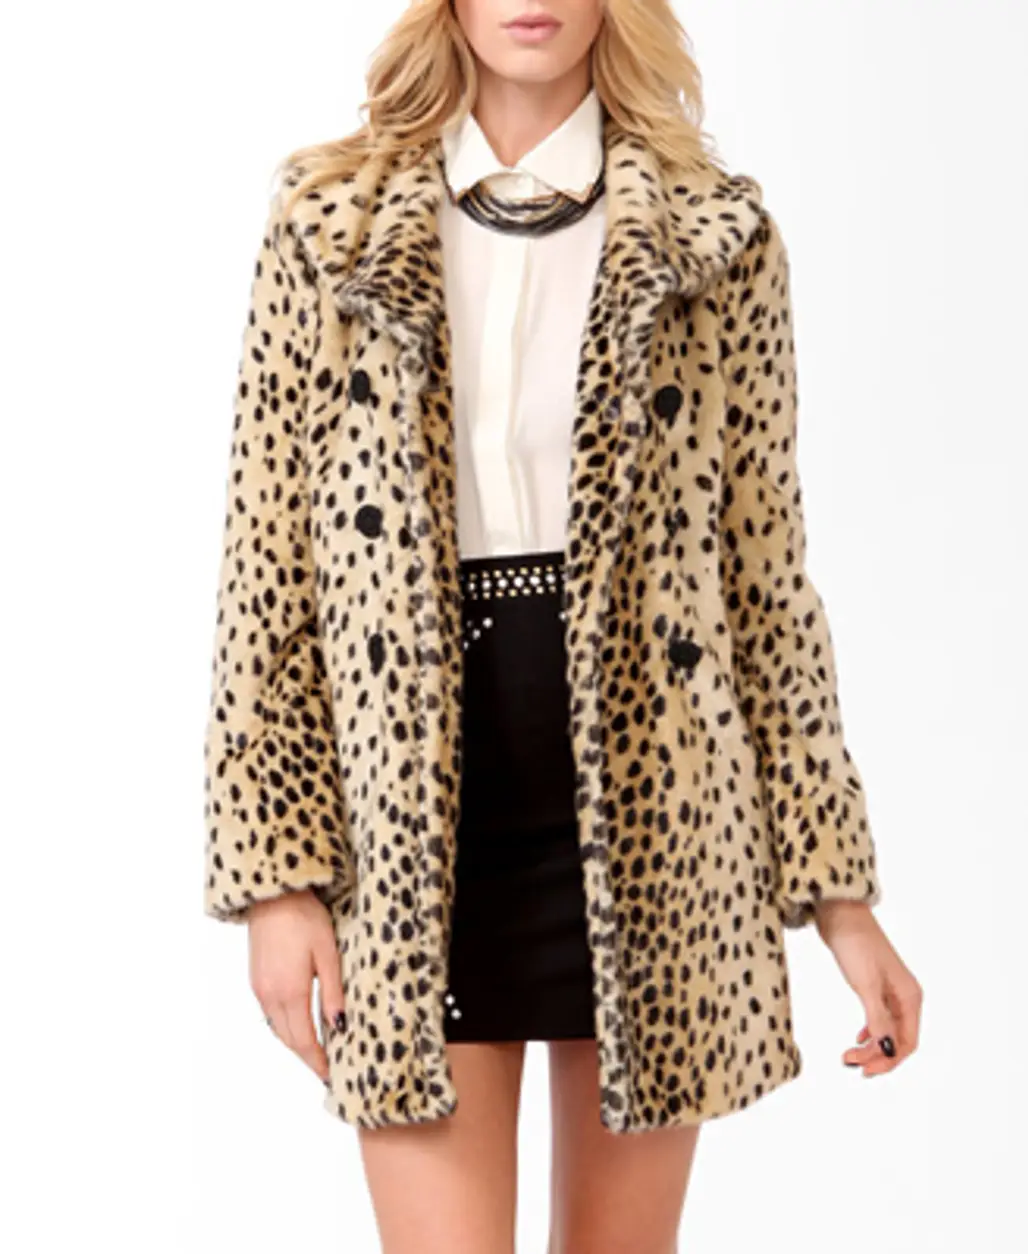 The Leopard Print Coat